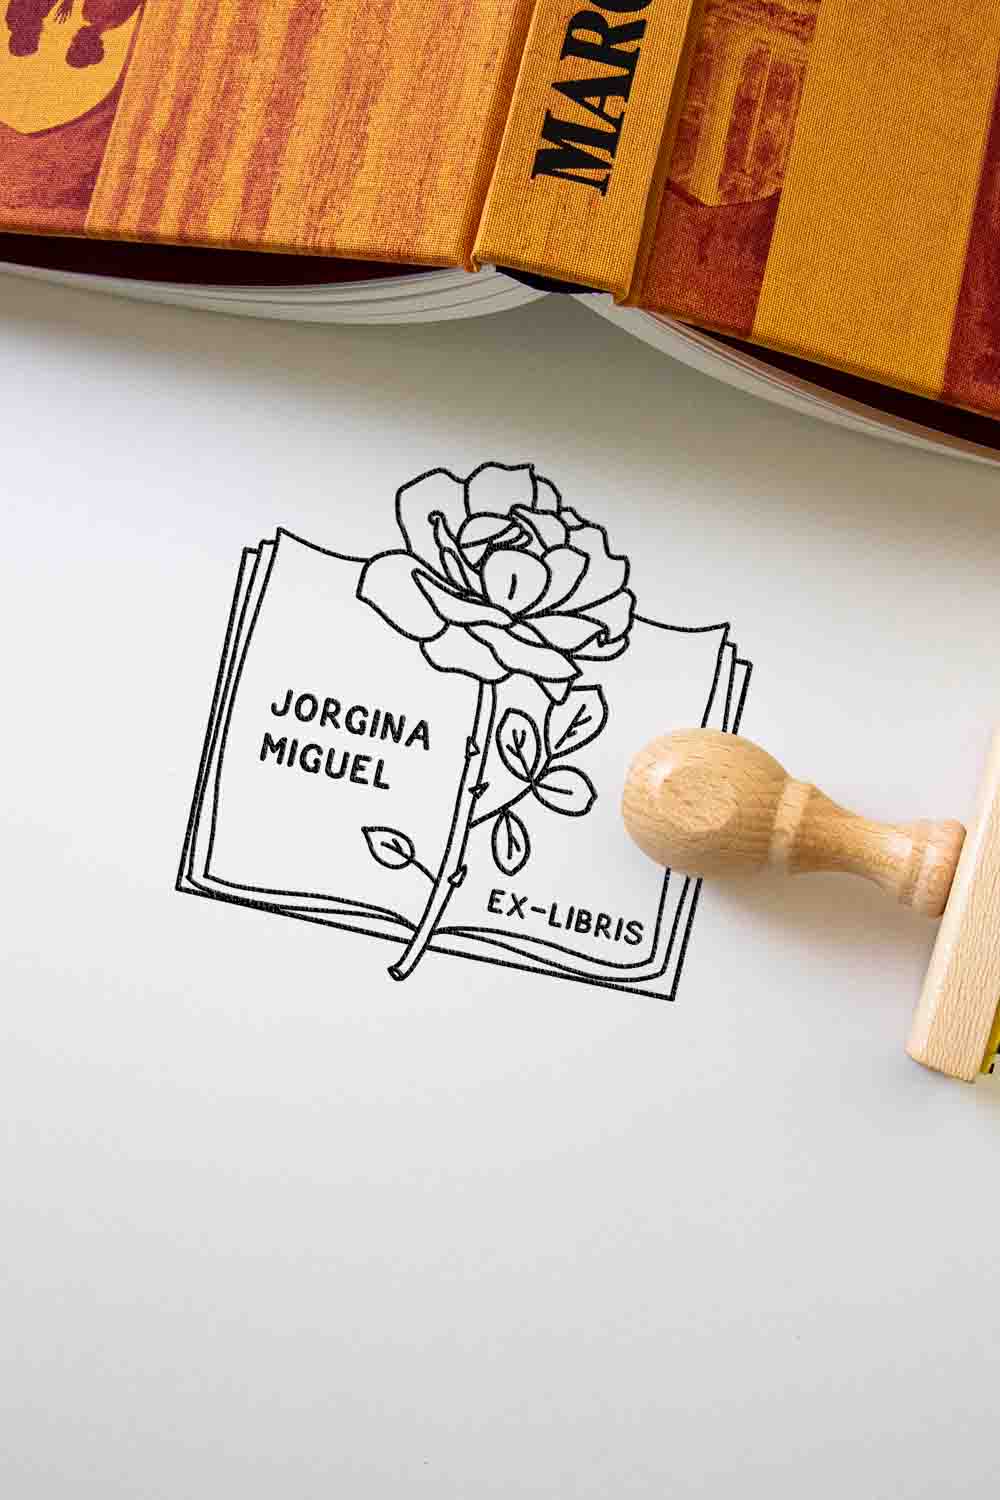 Un Ex-libris Libro abierto con rosa personalizado de Les Tampons de Roser que presenta un diseño de rosa con los nombres "Jorgina Miguel" impresos, sobre una superficie blanca junto a un sello de goma de madera y una pila de libros.